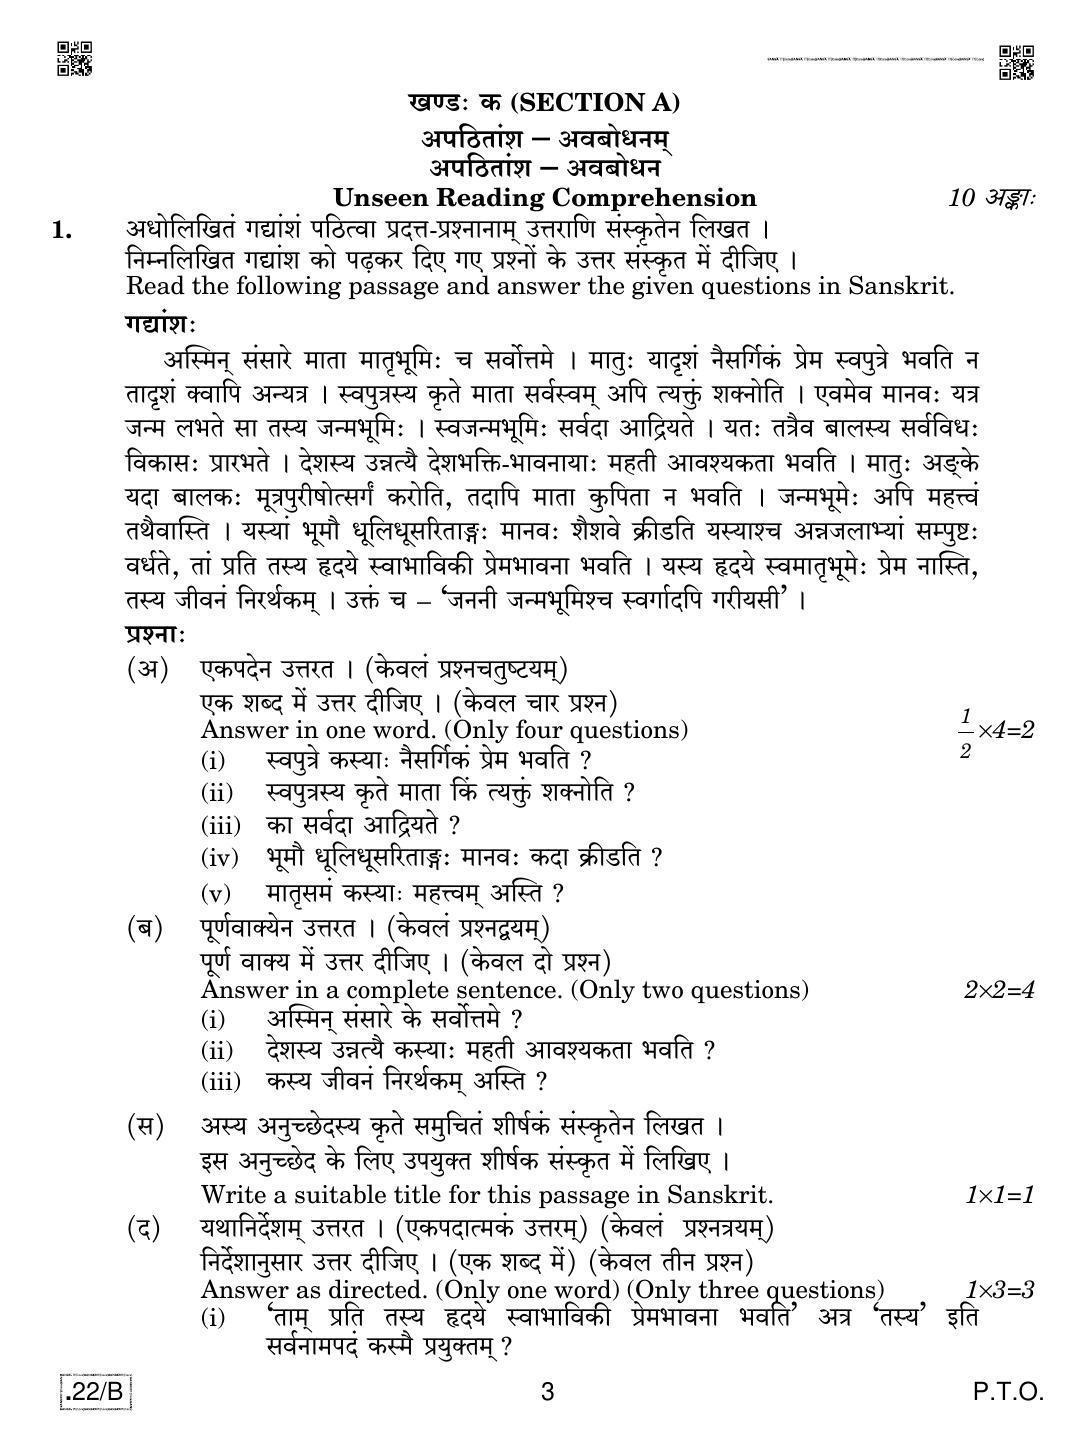 CBSE Class 12 Sanskrit Core 2020 Compartment Question Paper - Page 3